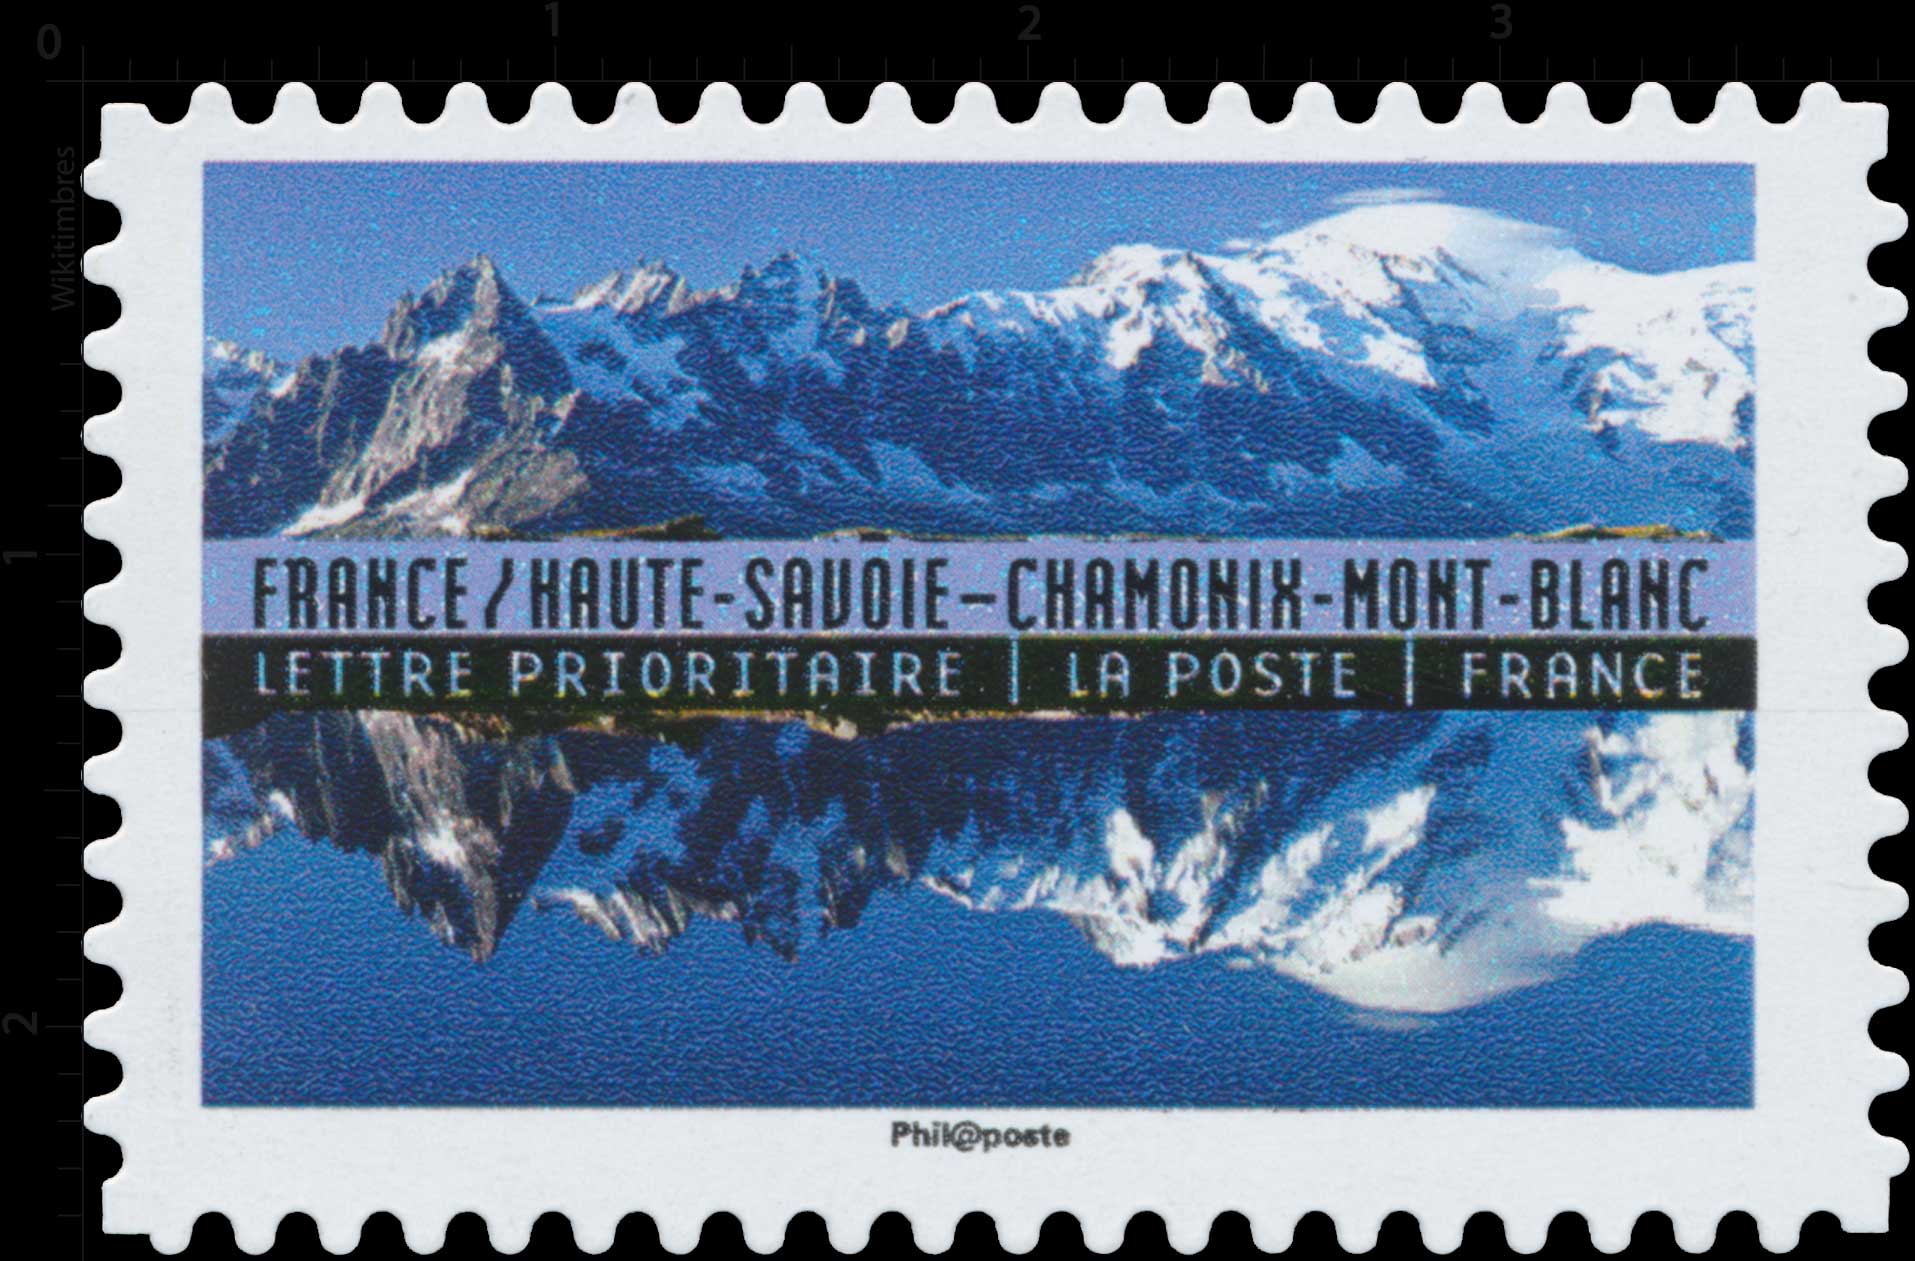 2017 France / Haute-Savoie - Chamonix - Mont-Blanc